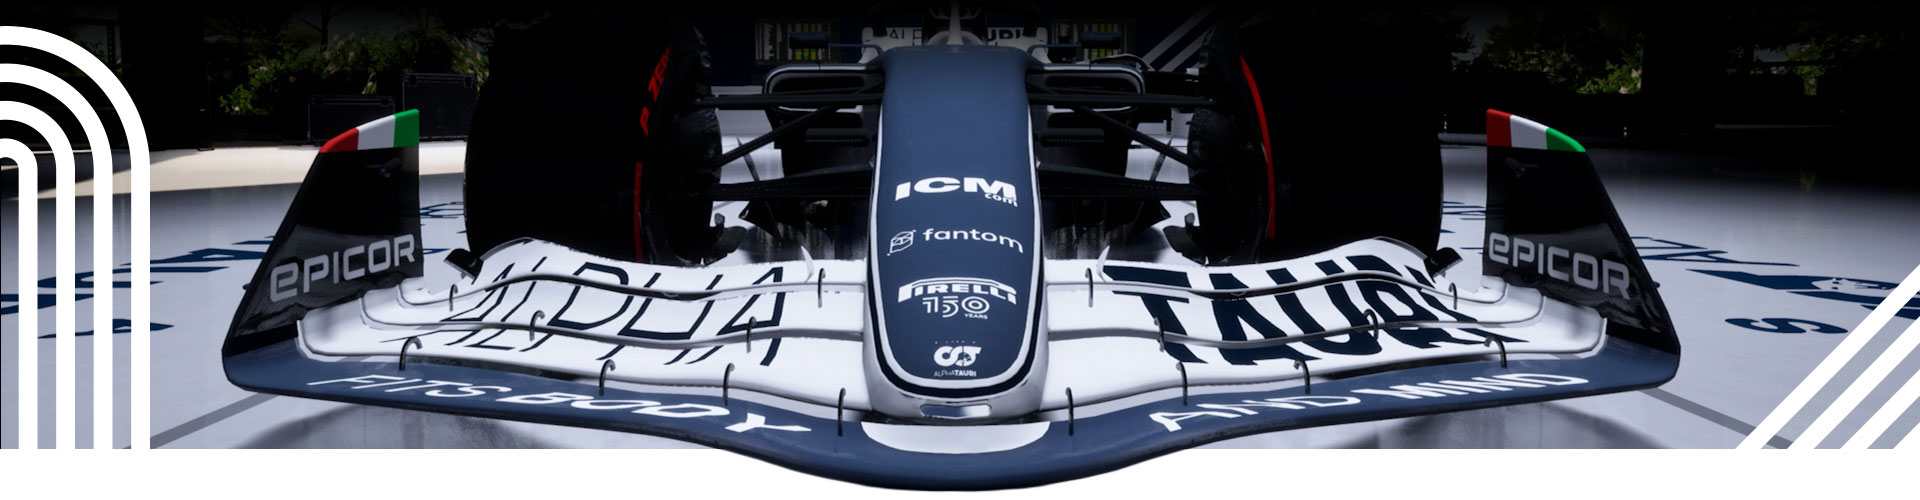 競速條紋基調覆蓋在靜止的 F1 車輛上。